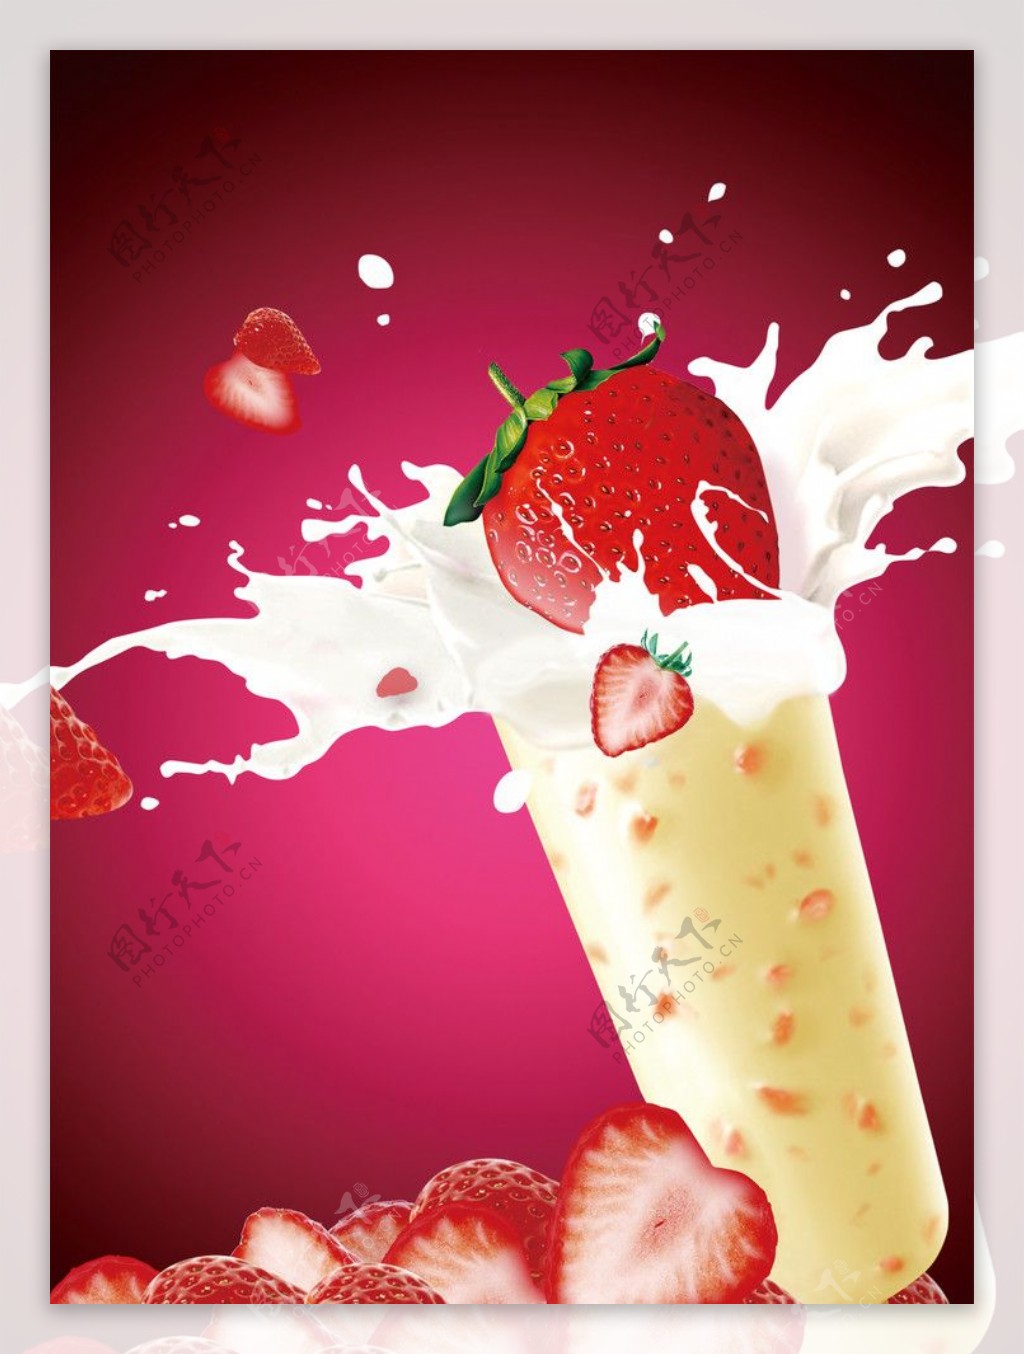 鲜奶草莓冰棒图片